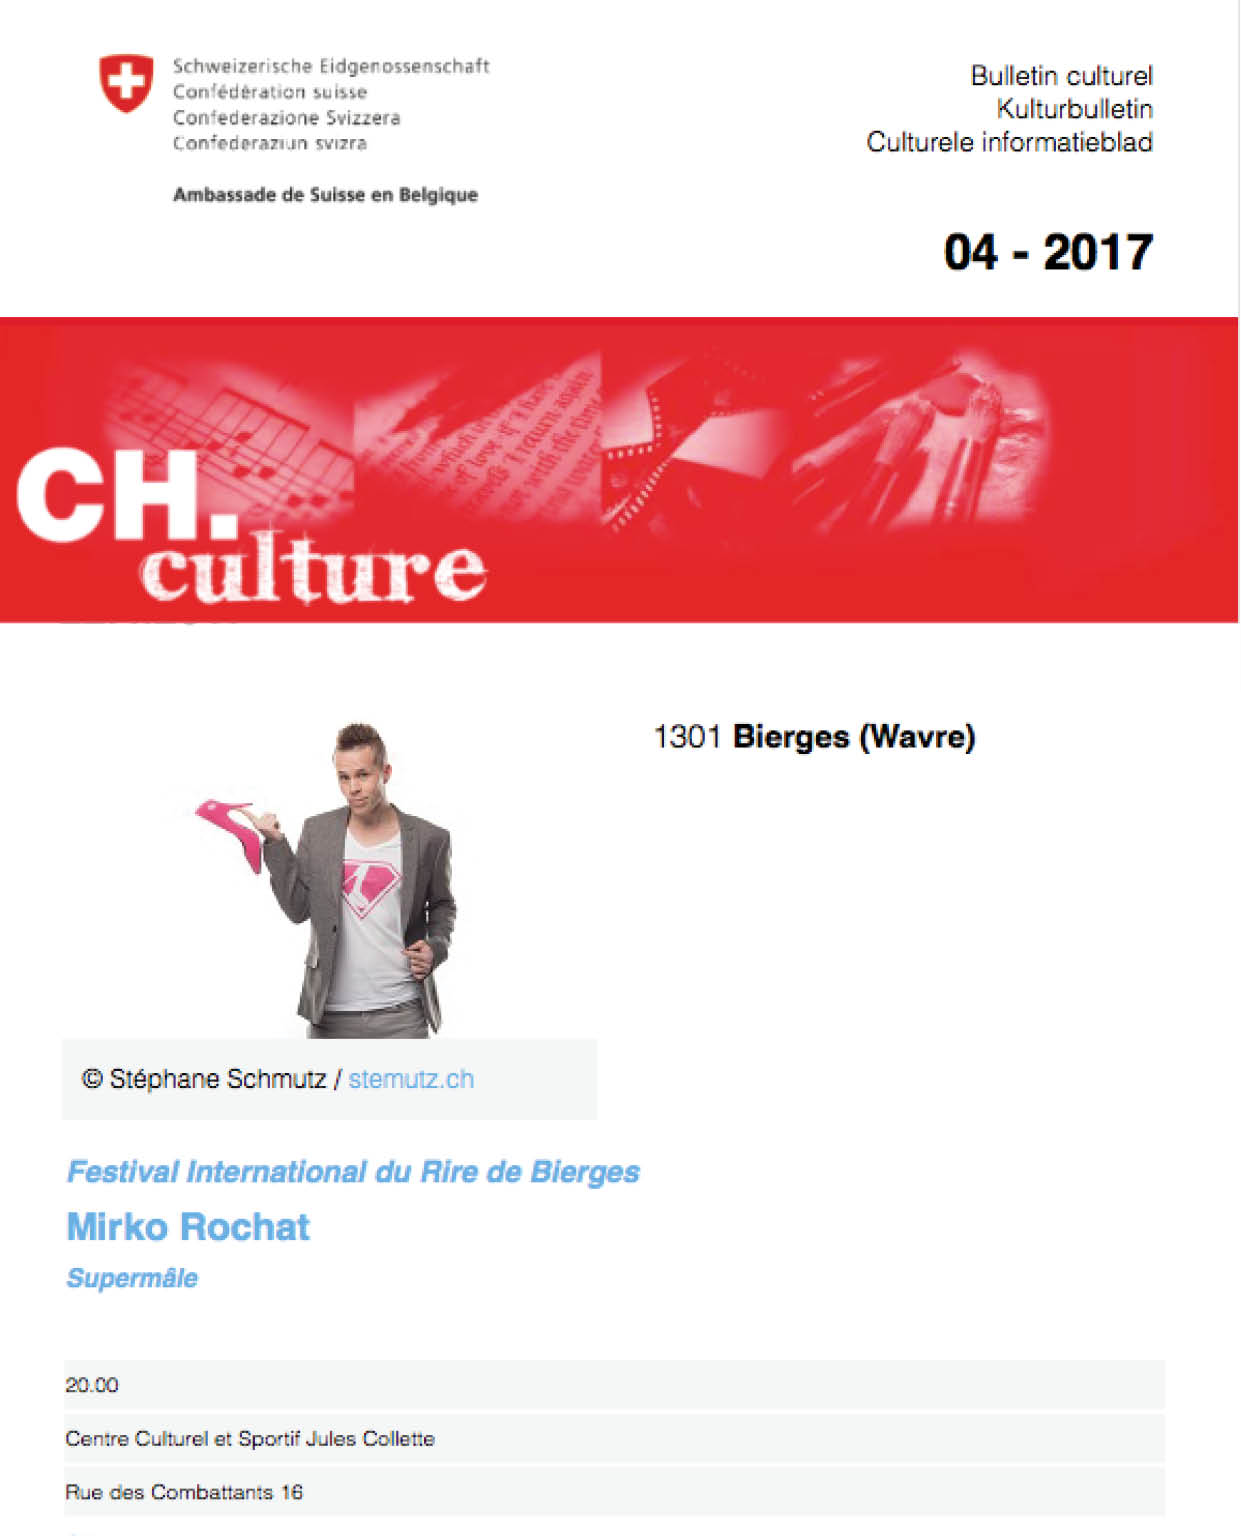 L'ambassade de Suisse à Bruxelles annonce la venue de Mirko Rochat - Supermâle lors du Festival International d'humour de Bierges